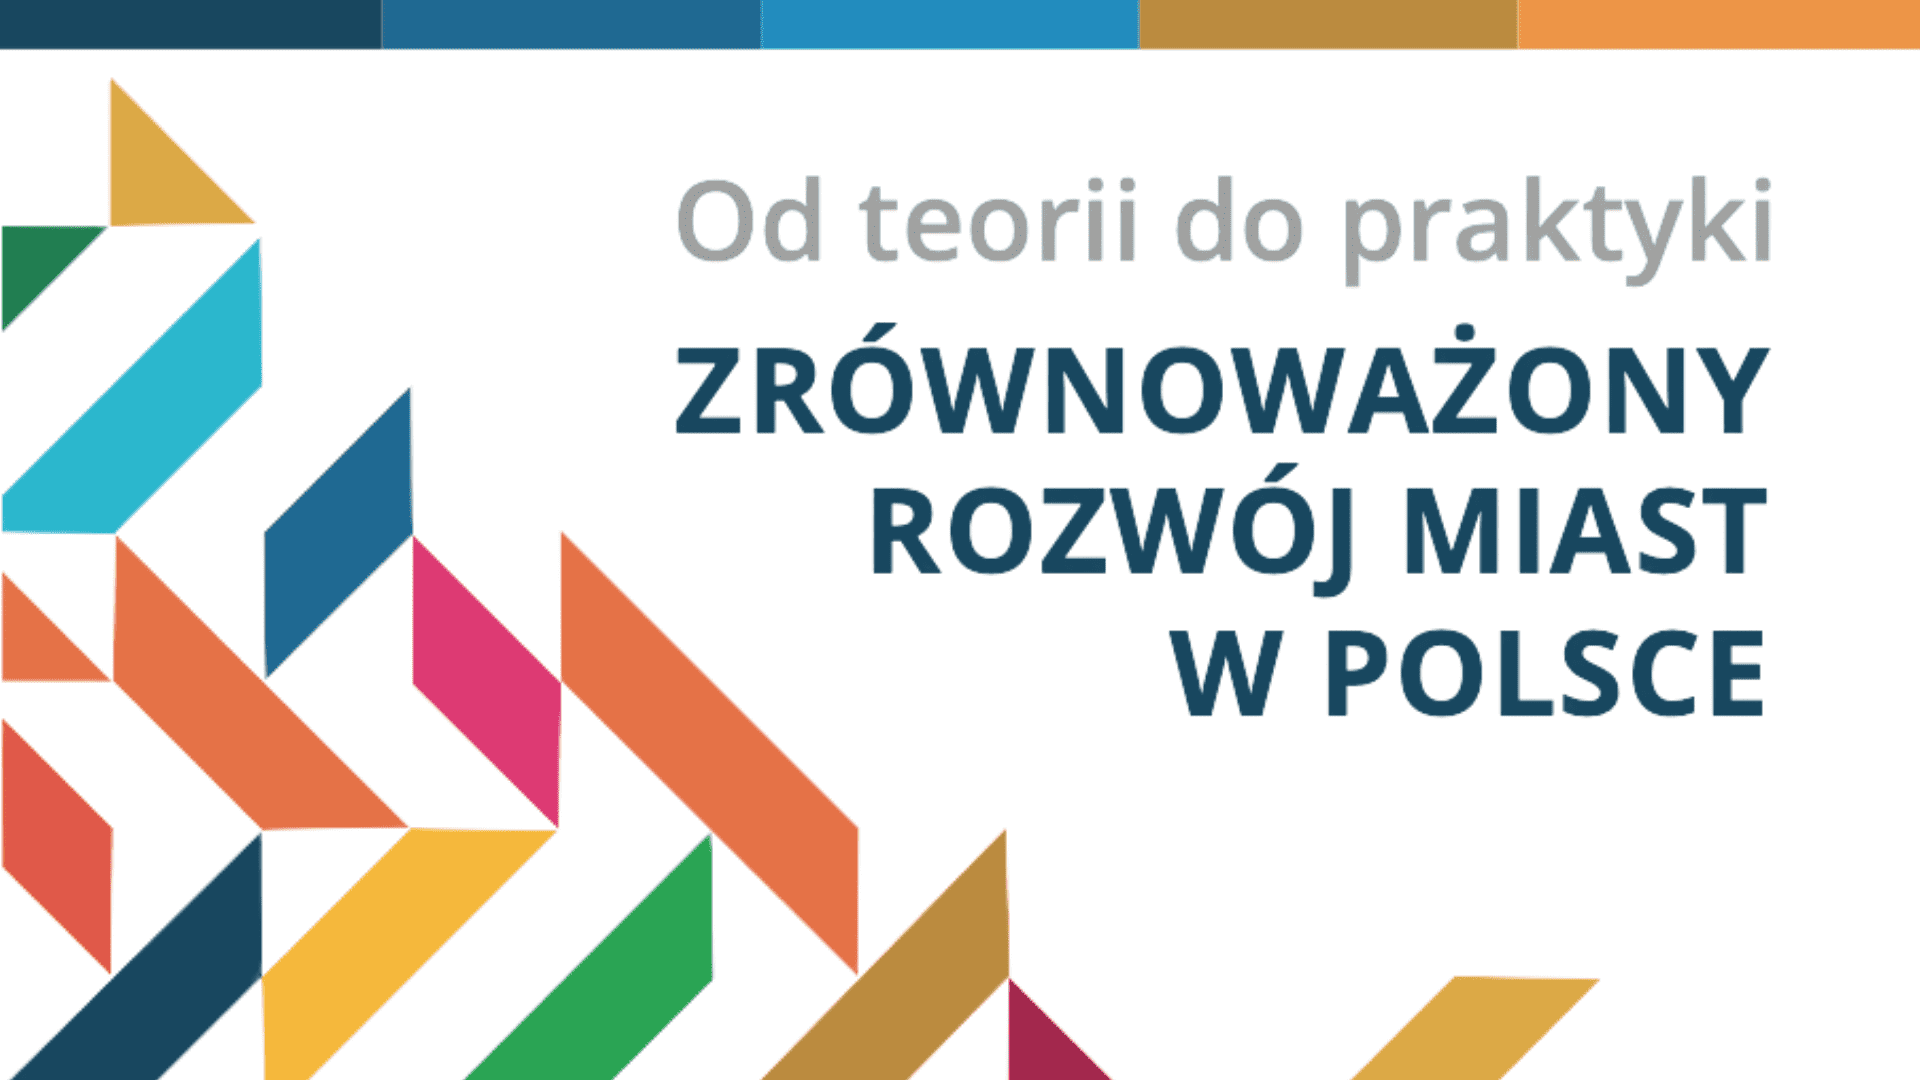 Zrównoważony rozwój miast w Polsce – relacja z 1. panelu wideokonferencji